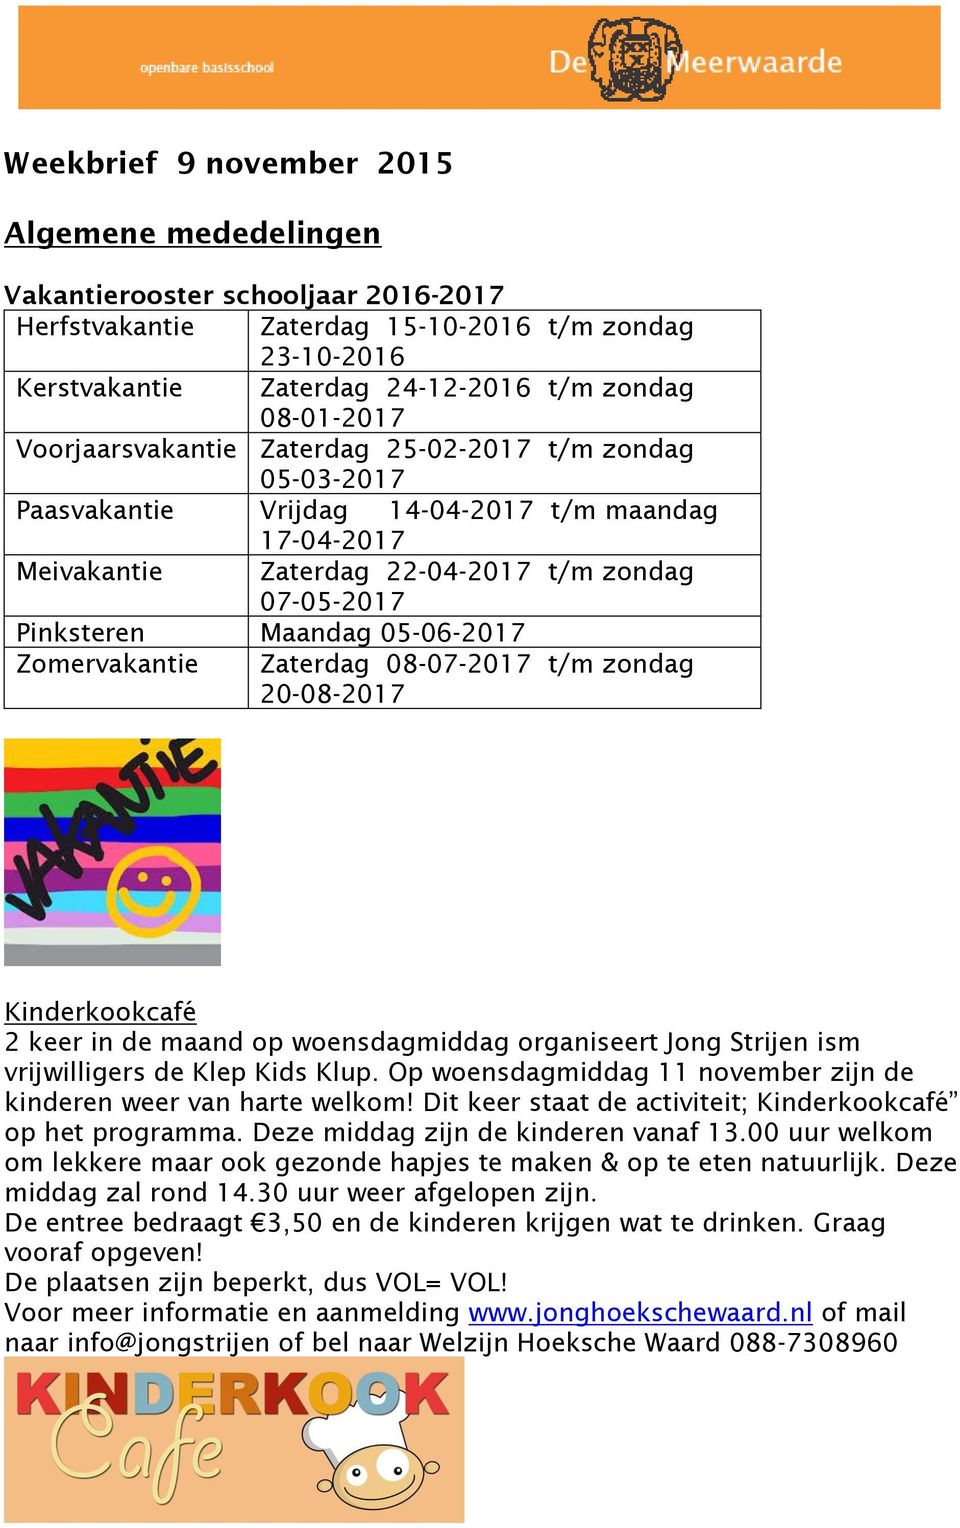 Zomervakantie Zaterdag 08-07-2017 t/m zondag 20-08-2017 Kinderkookcafé 2 keer in de maand op woensdagmiddag organiseert Jong Strijen ism vrijwilligers de Klep Kids Klup.